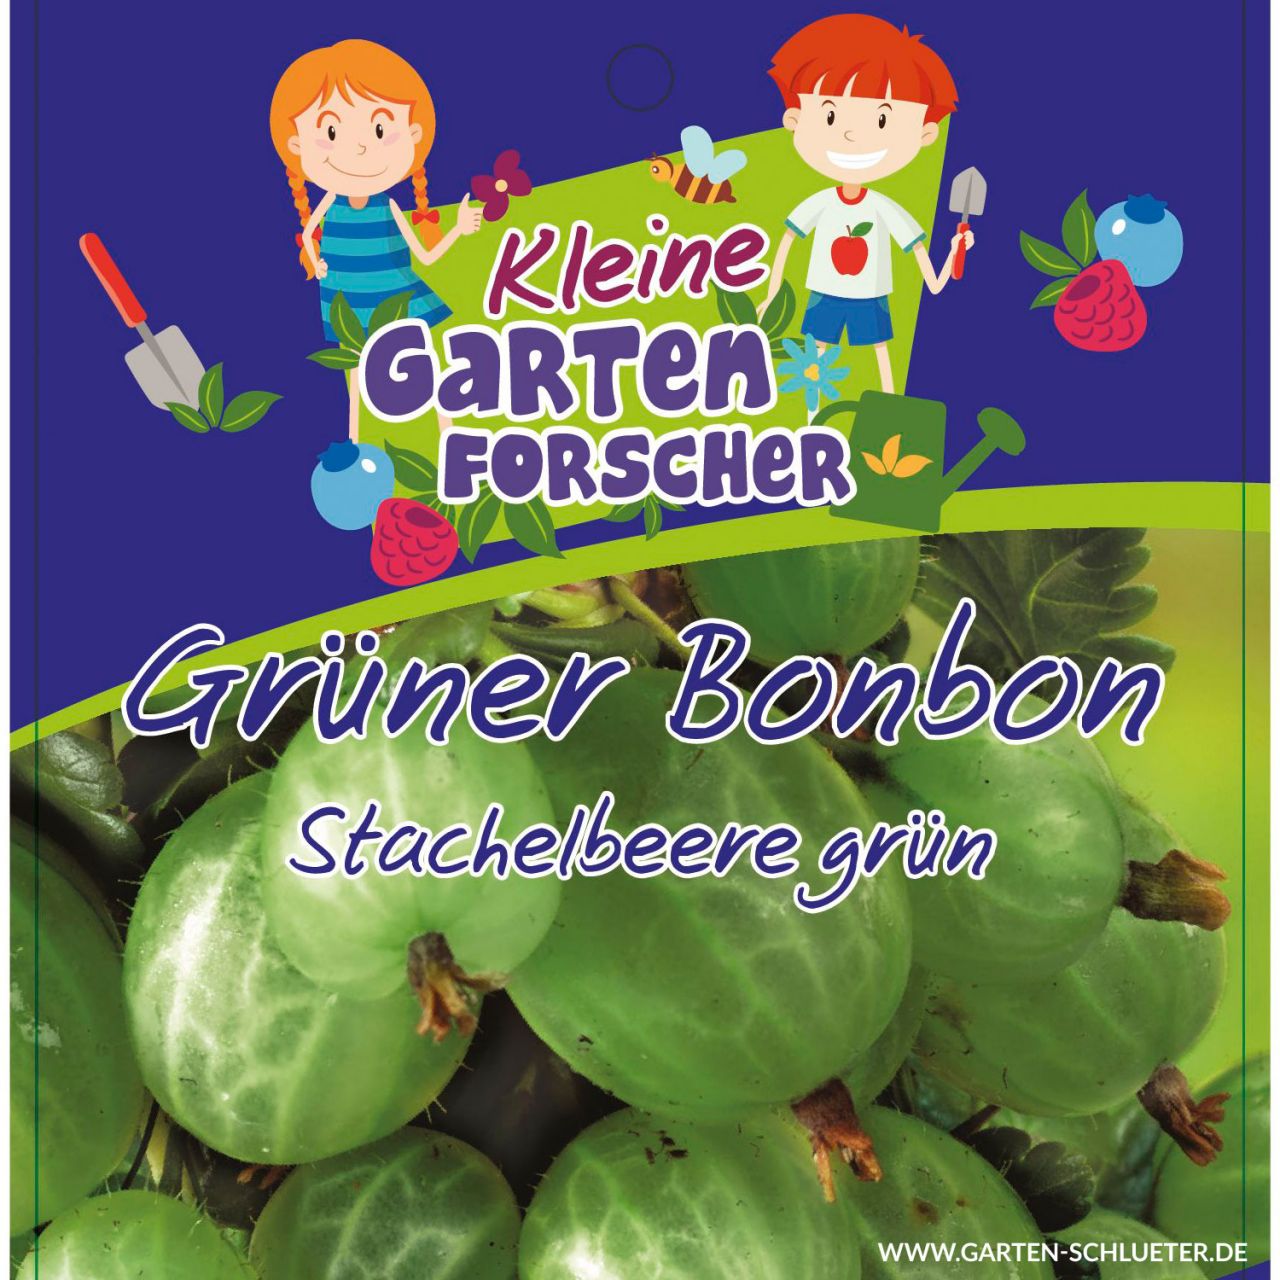 Grüne Stachelbeere 'Grüner Bonbon' Kleine Gartenforscher von Kleine Gartenforscher